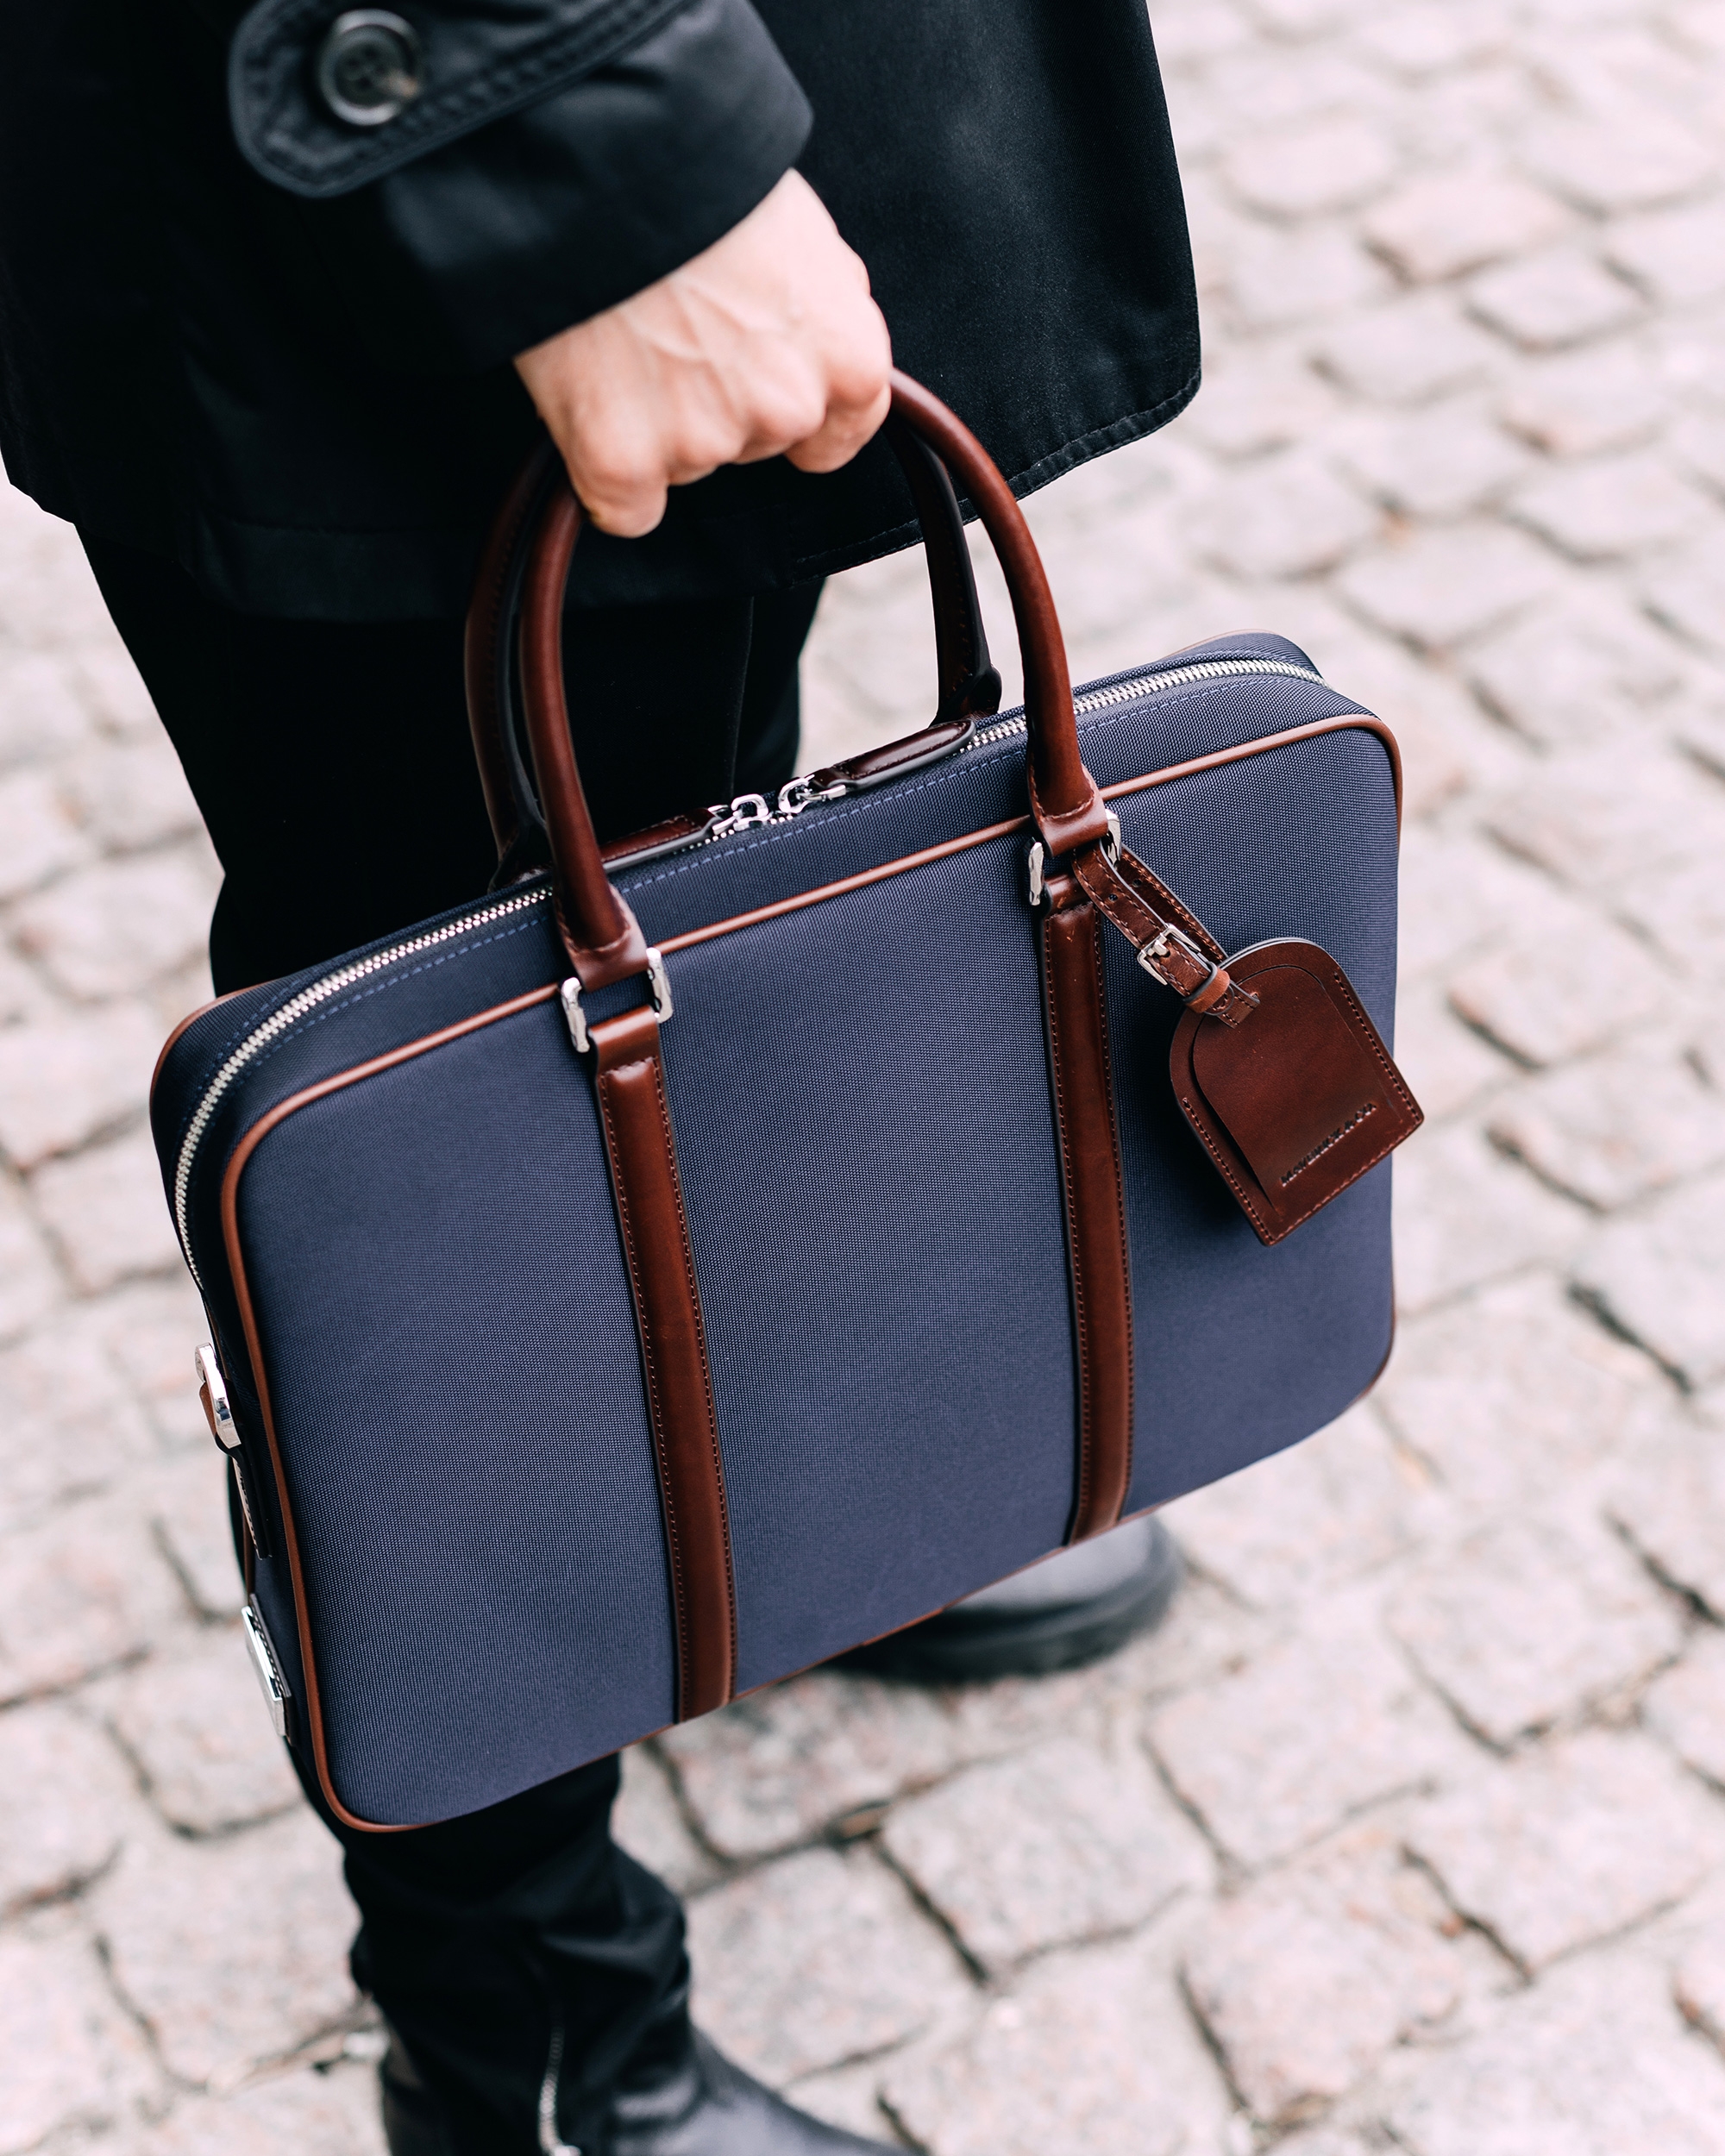 Túi xách Maverick VLT Briefcase - Black quai xách và dây đeo